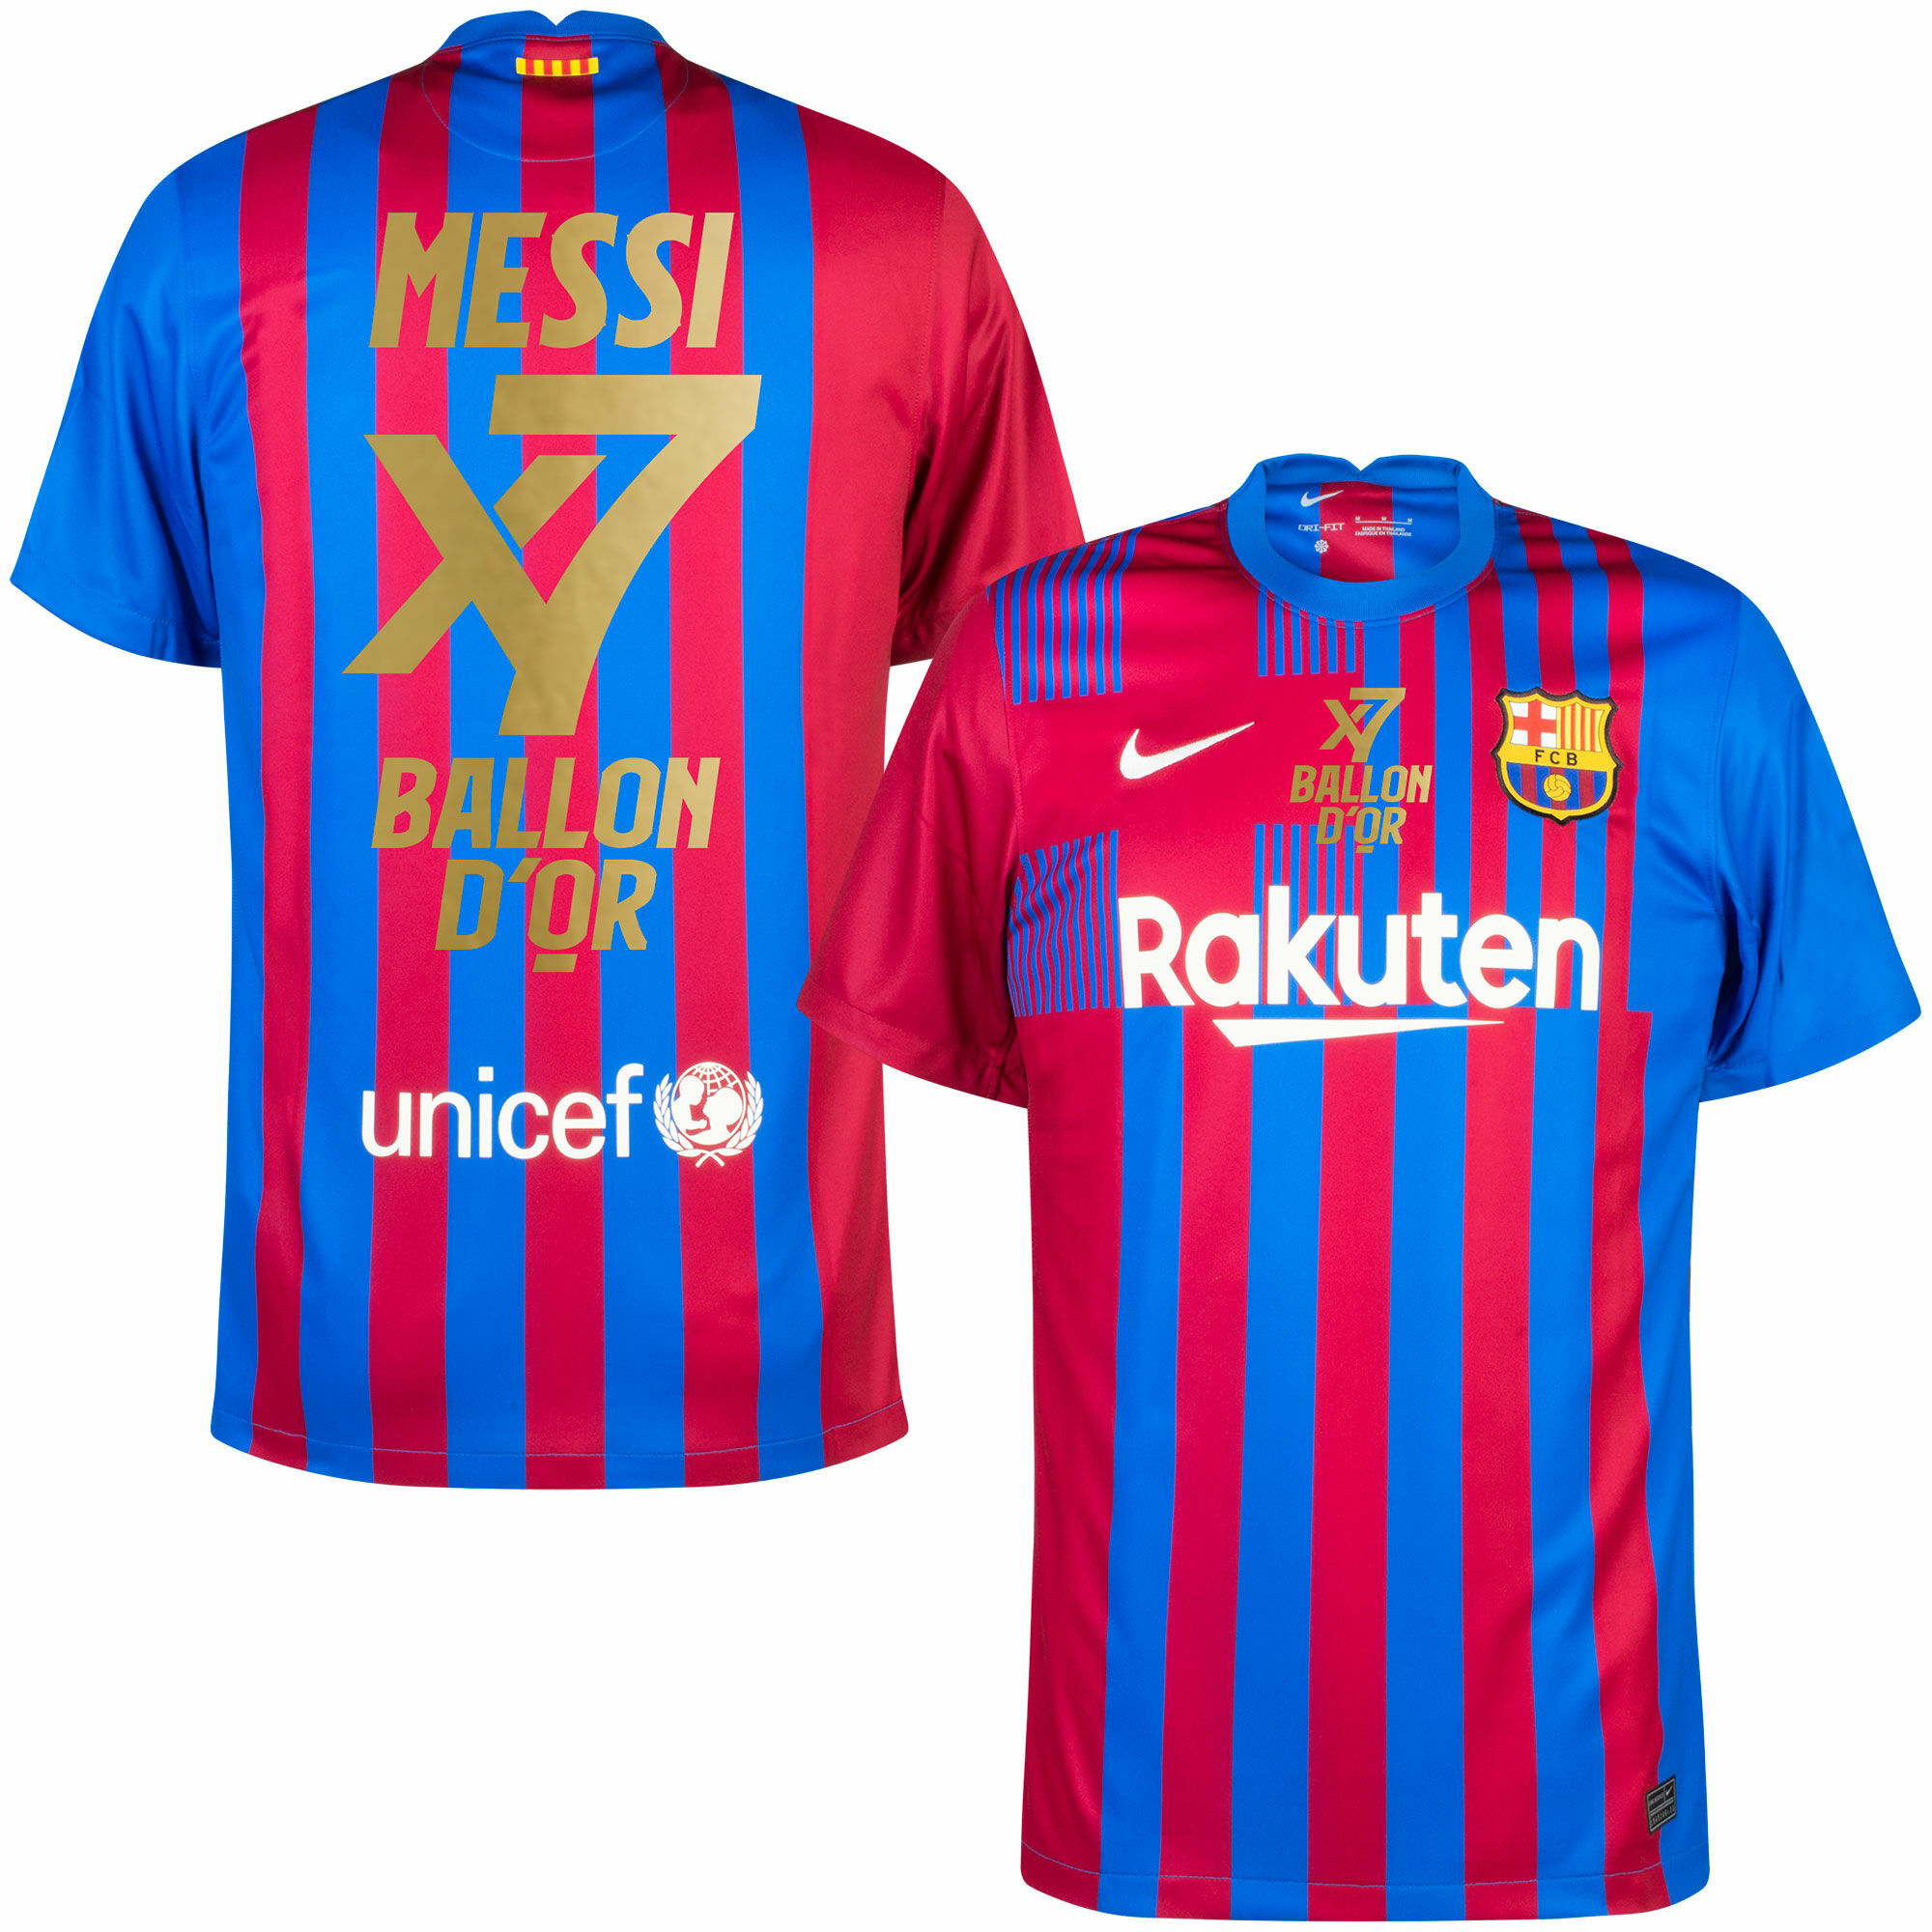 Barcelona - Dres fotbalový - 7x Ballon D'Or, modročervený, sezóna 2021/22, domácí, Lionel Messi